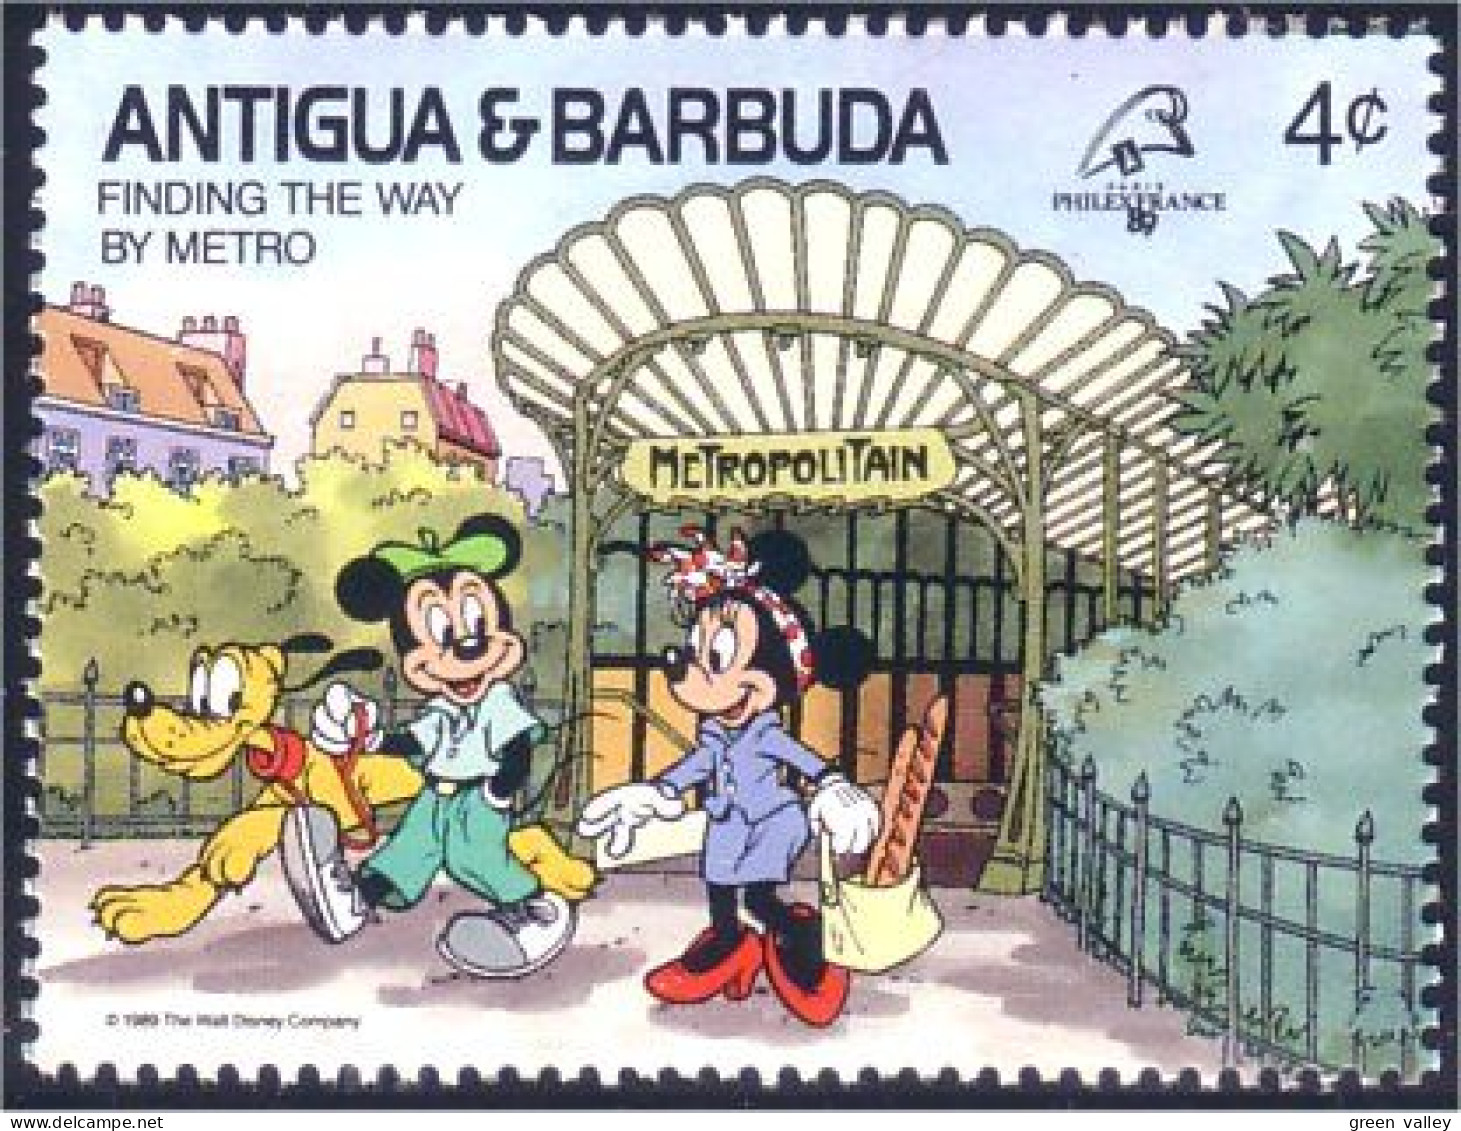 143 Barbuda Antigua Pluto Metro Paris Mickey Minnie MNH ** Neuf SC (ABB-16b) - Tranvie